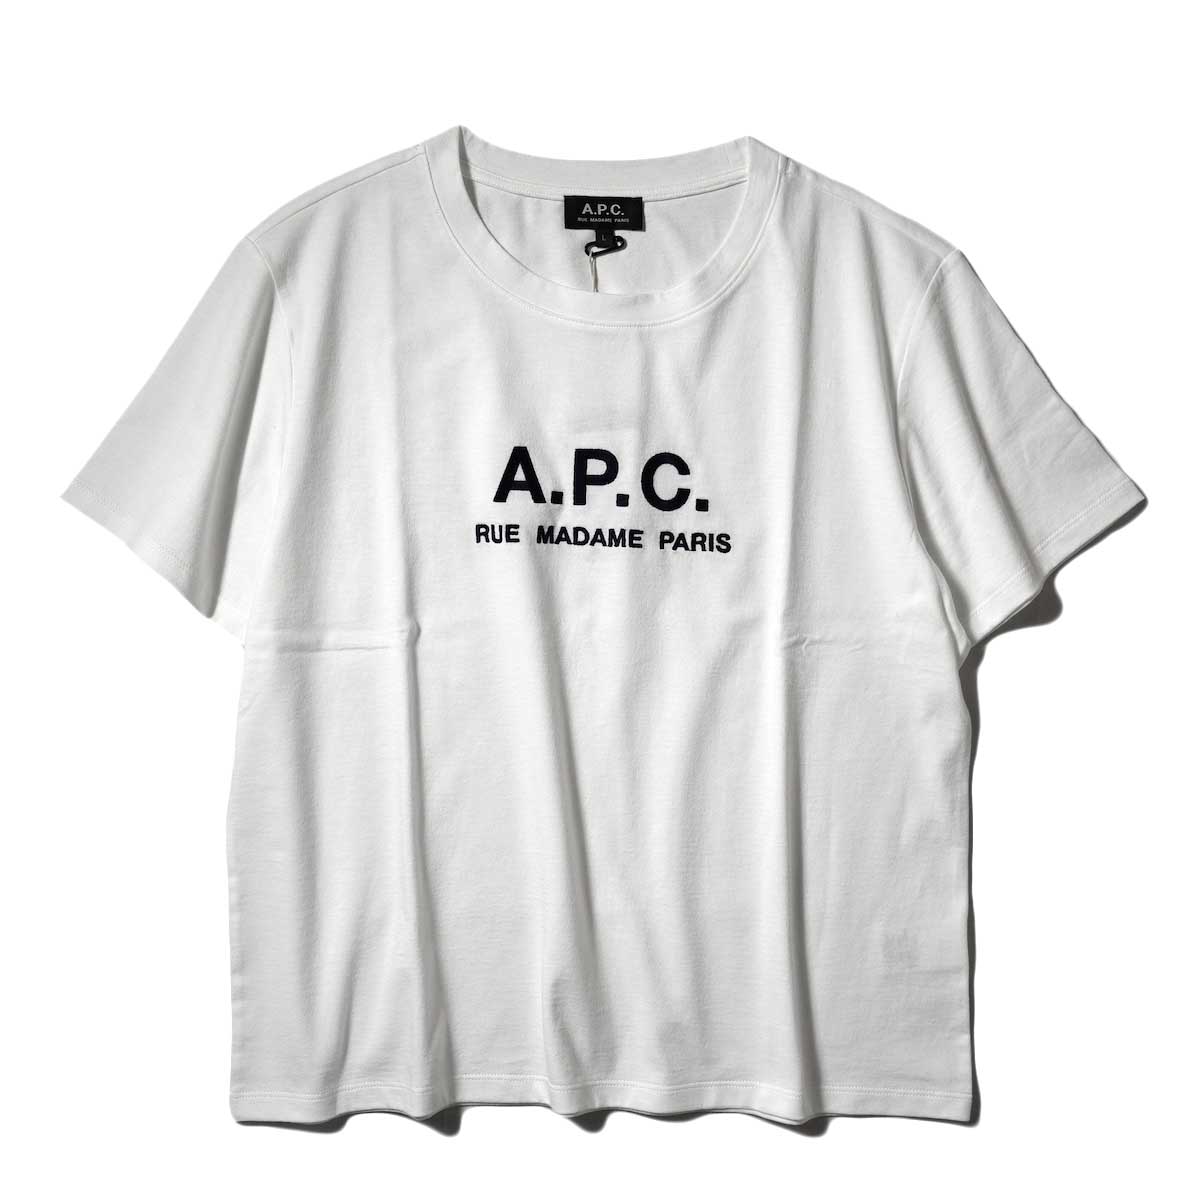 A.P.C. / Rue Madame Tシャツ (White)